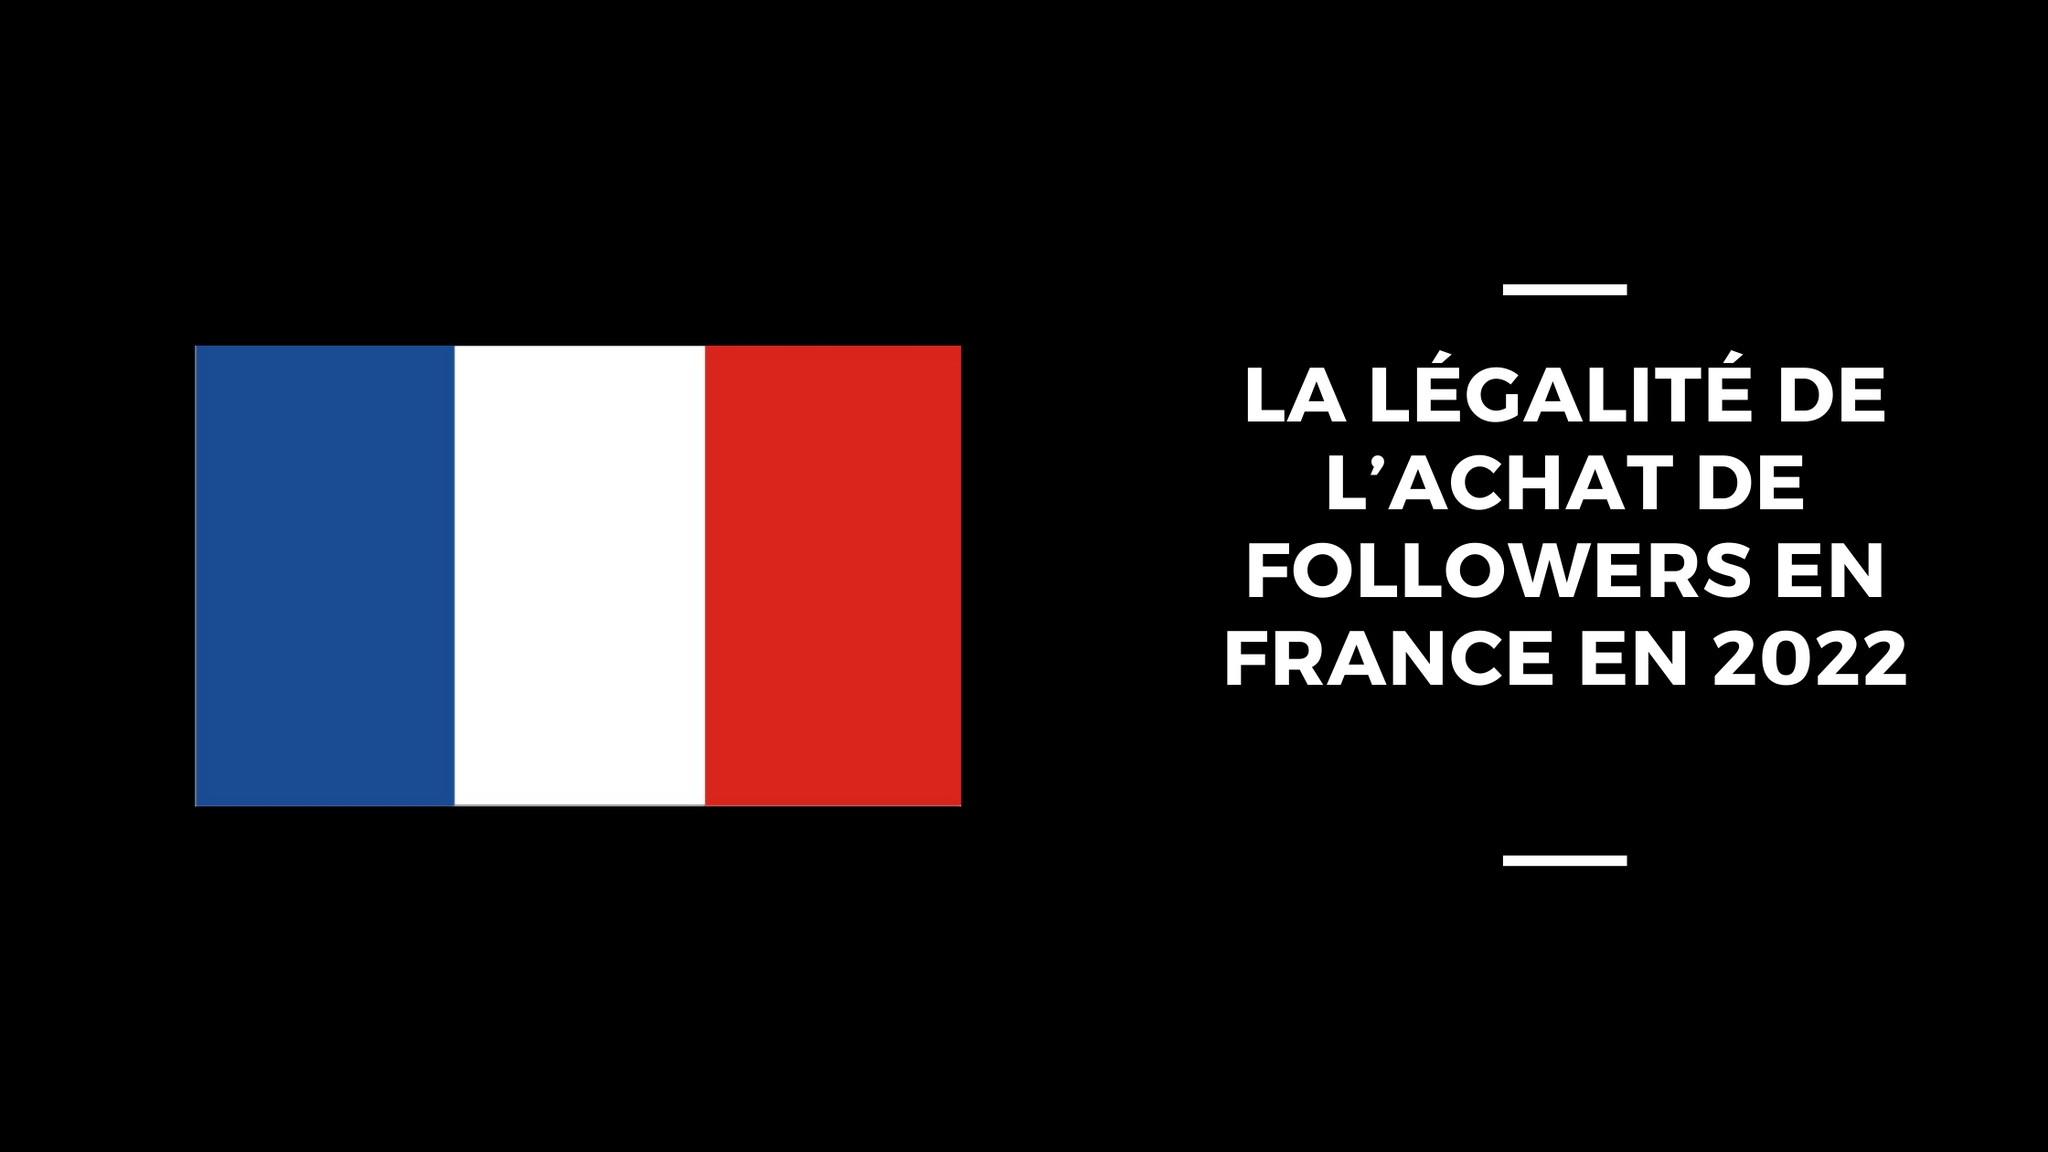 La Légalité de L’Achat de Followers en France en 2022